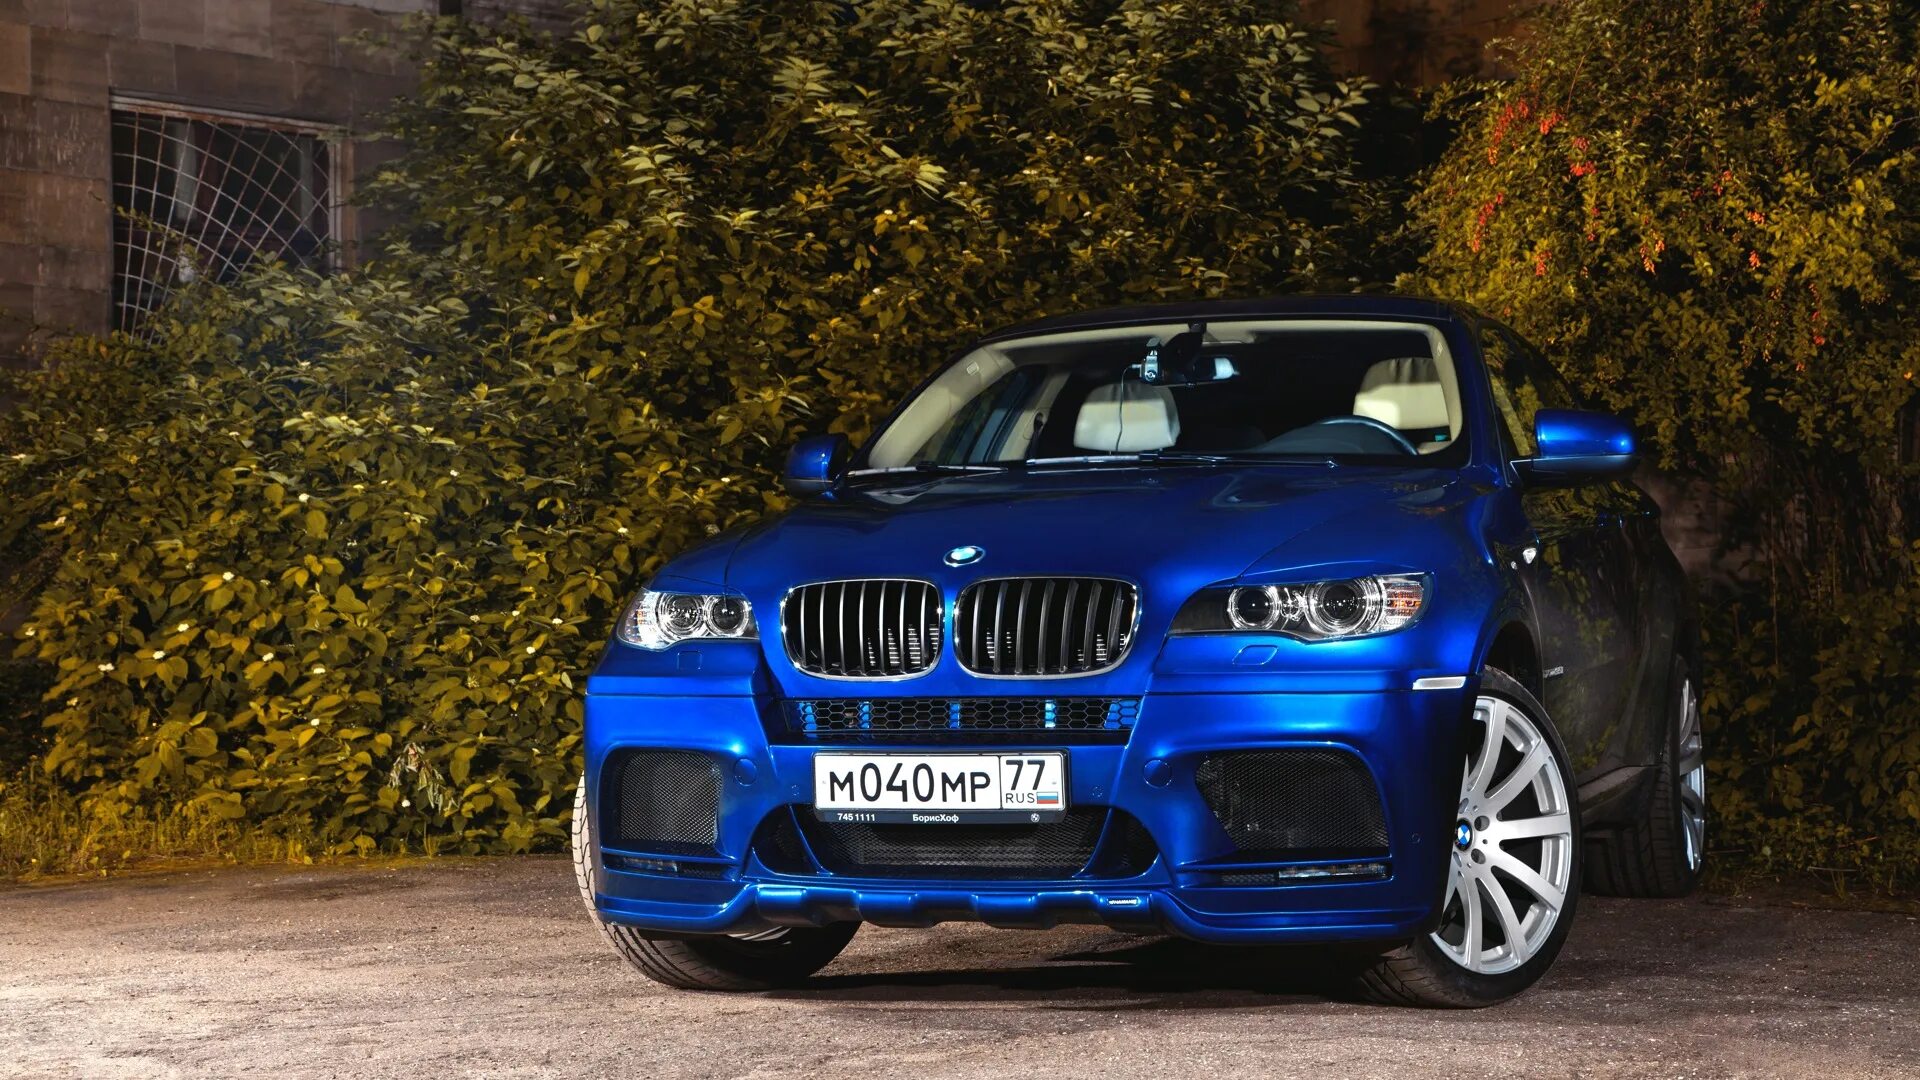 6 синего цвета. BMW x6 e72. БМВ x6 синий. BMW x6 голубая. BMW x6 темно синий.